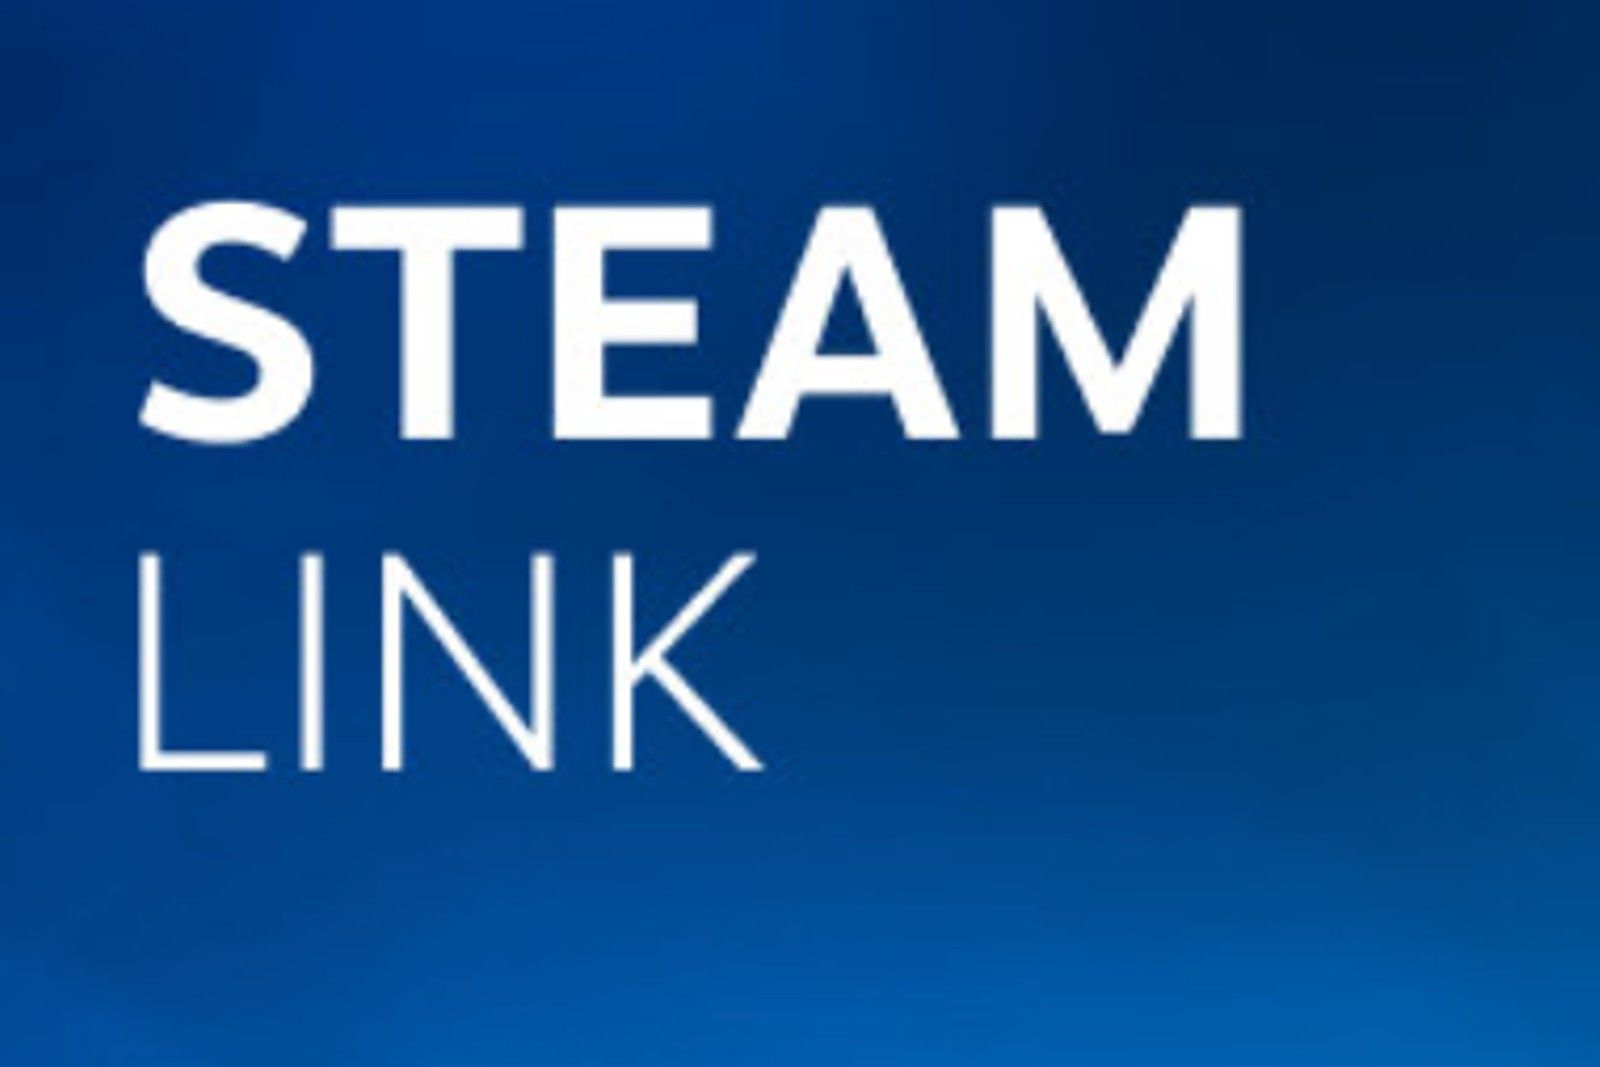 Steam Link